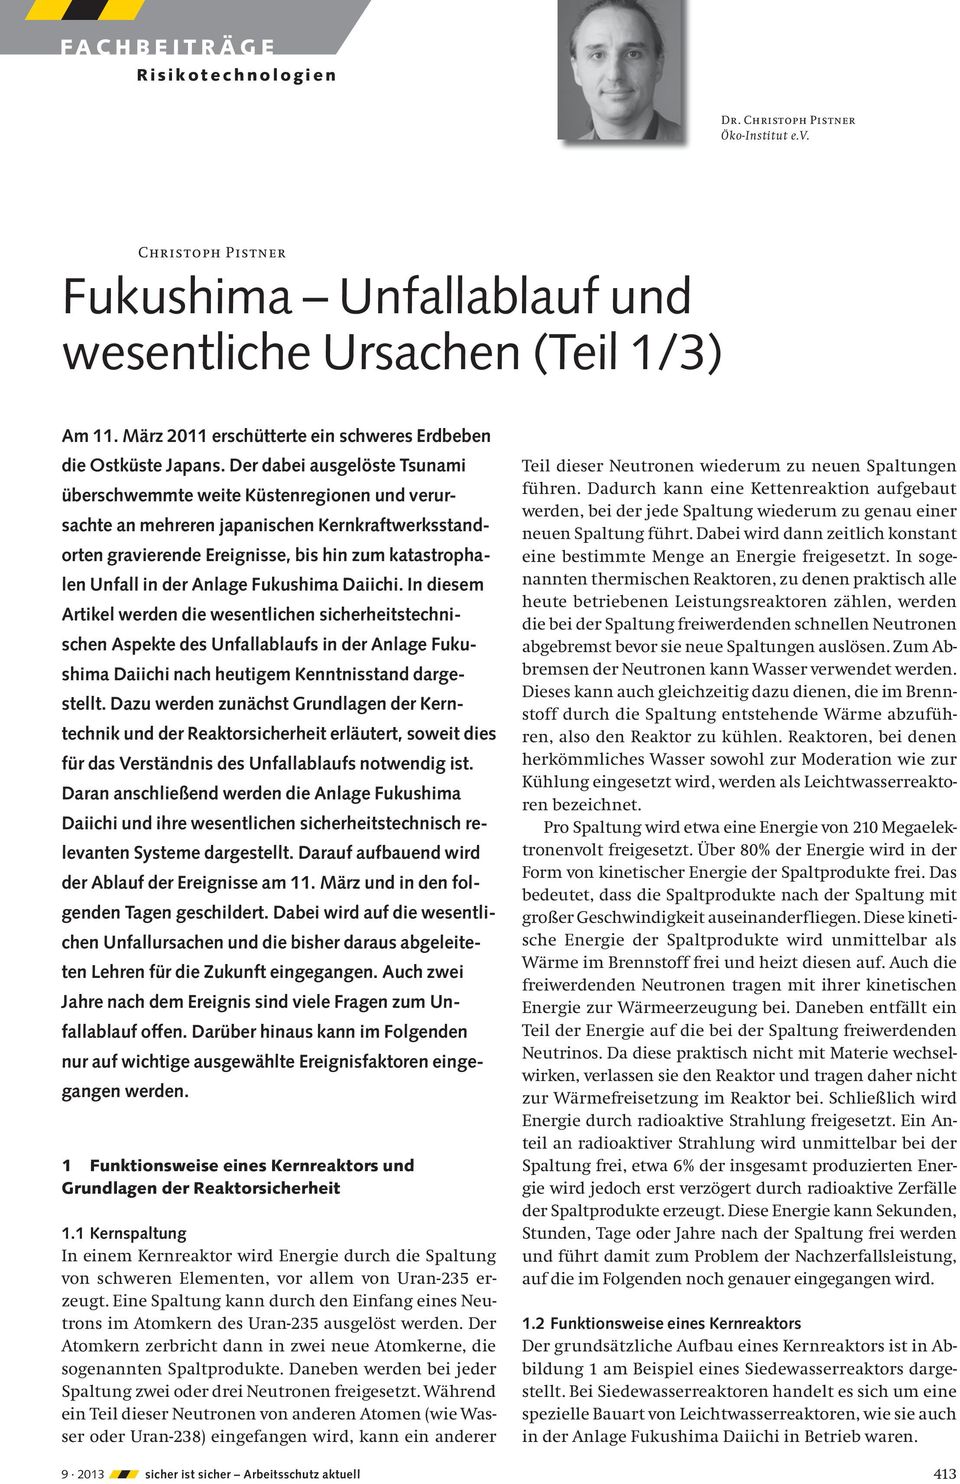 Anlage Fukushima Daiichi. In diesem Artikel werden die wesentlichen sicherheitstechnischen Aspekte des Unfallablaufs in der Anlage Fukushima Daiichi nach heutigem Kenntnisstand dargestellt.